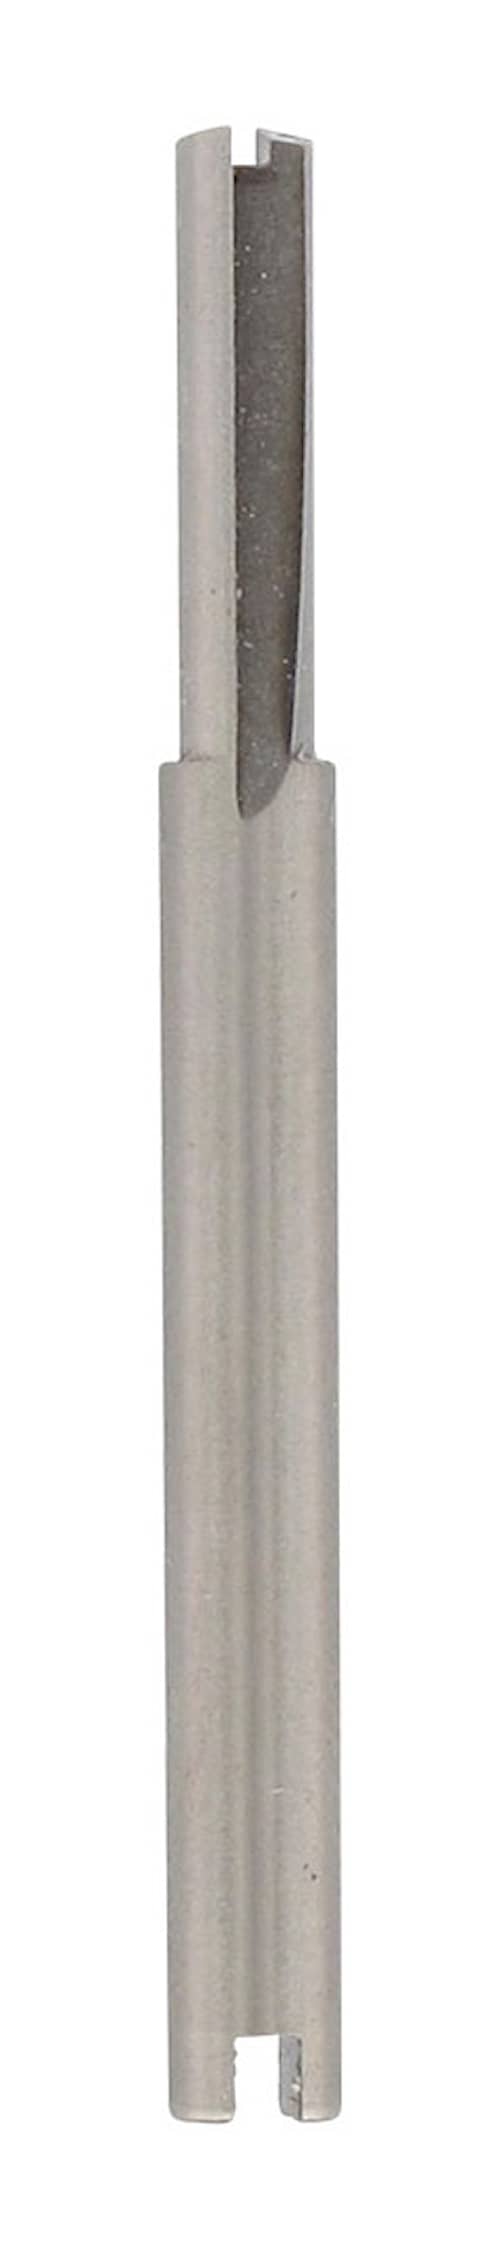 Dremel Spårfräs 650 3,2mm